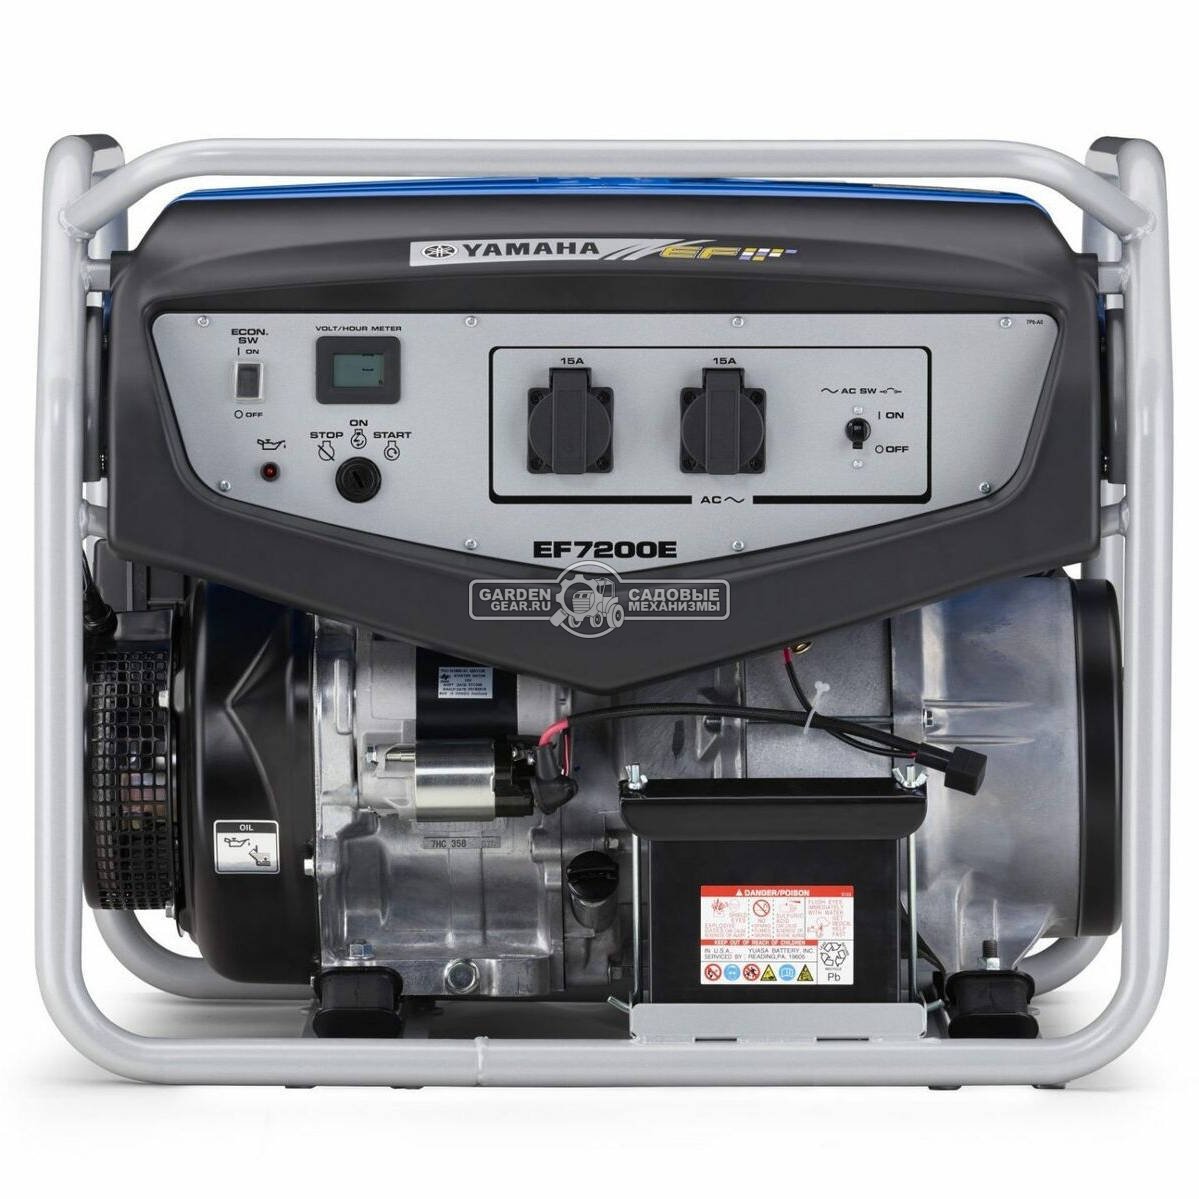 Бензиновый генератор Yamaha EF 7200 E (PRC, Yamaha, 358 см3, 5.0/6.0 кВт, эл/стартер, 28 л, 93 кг)